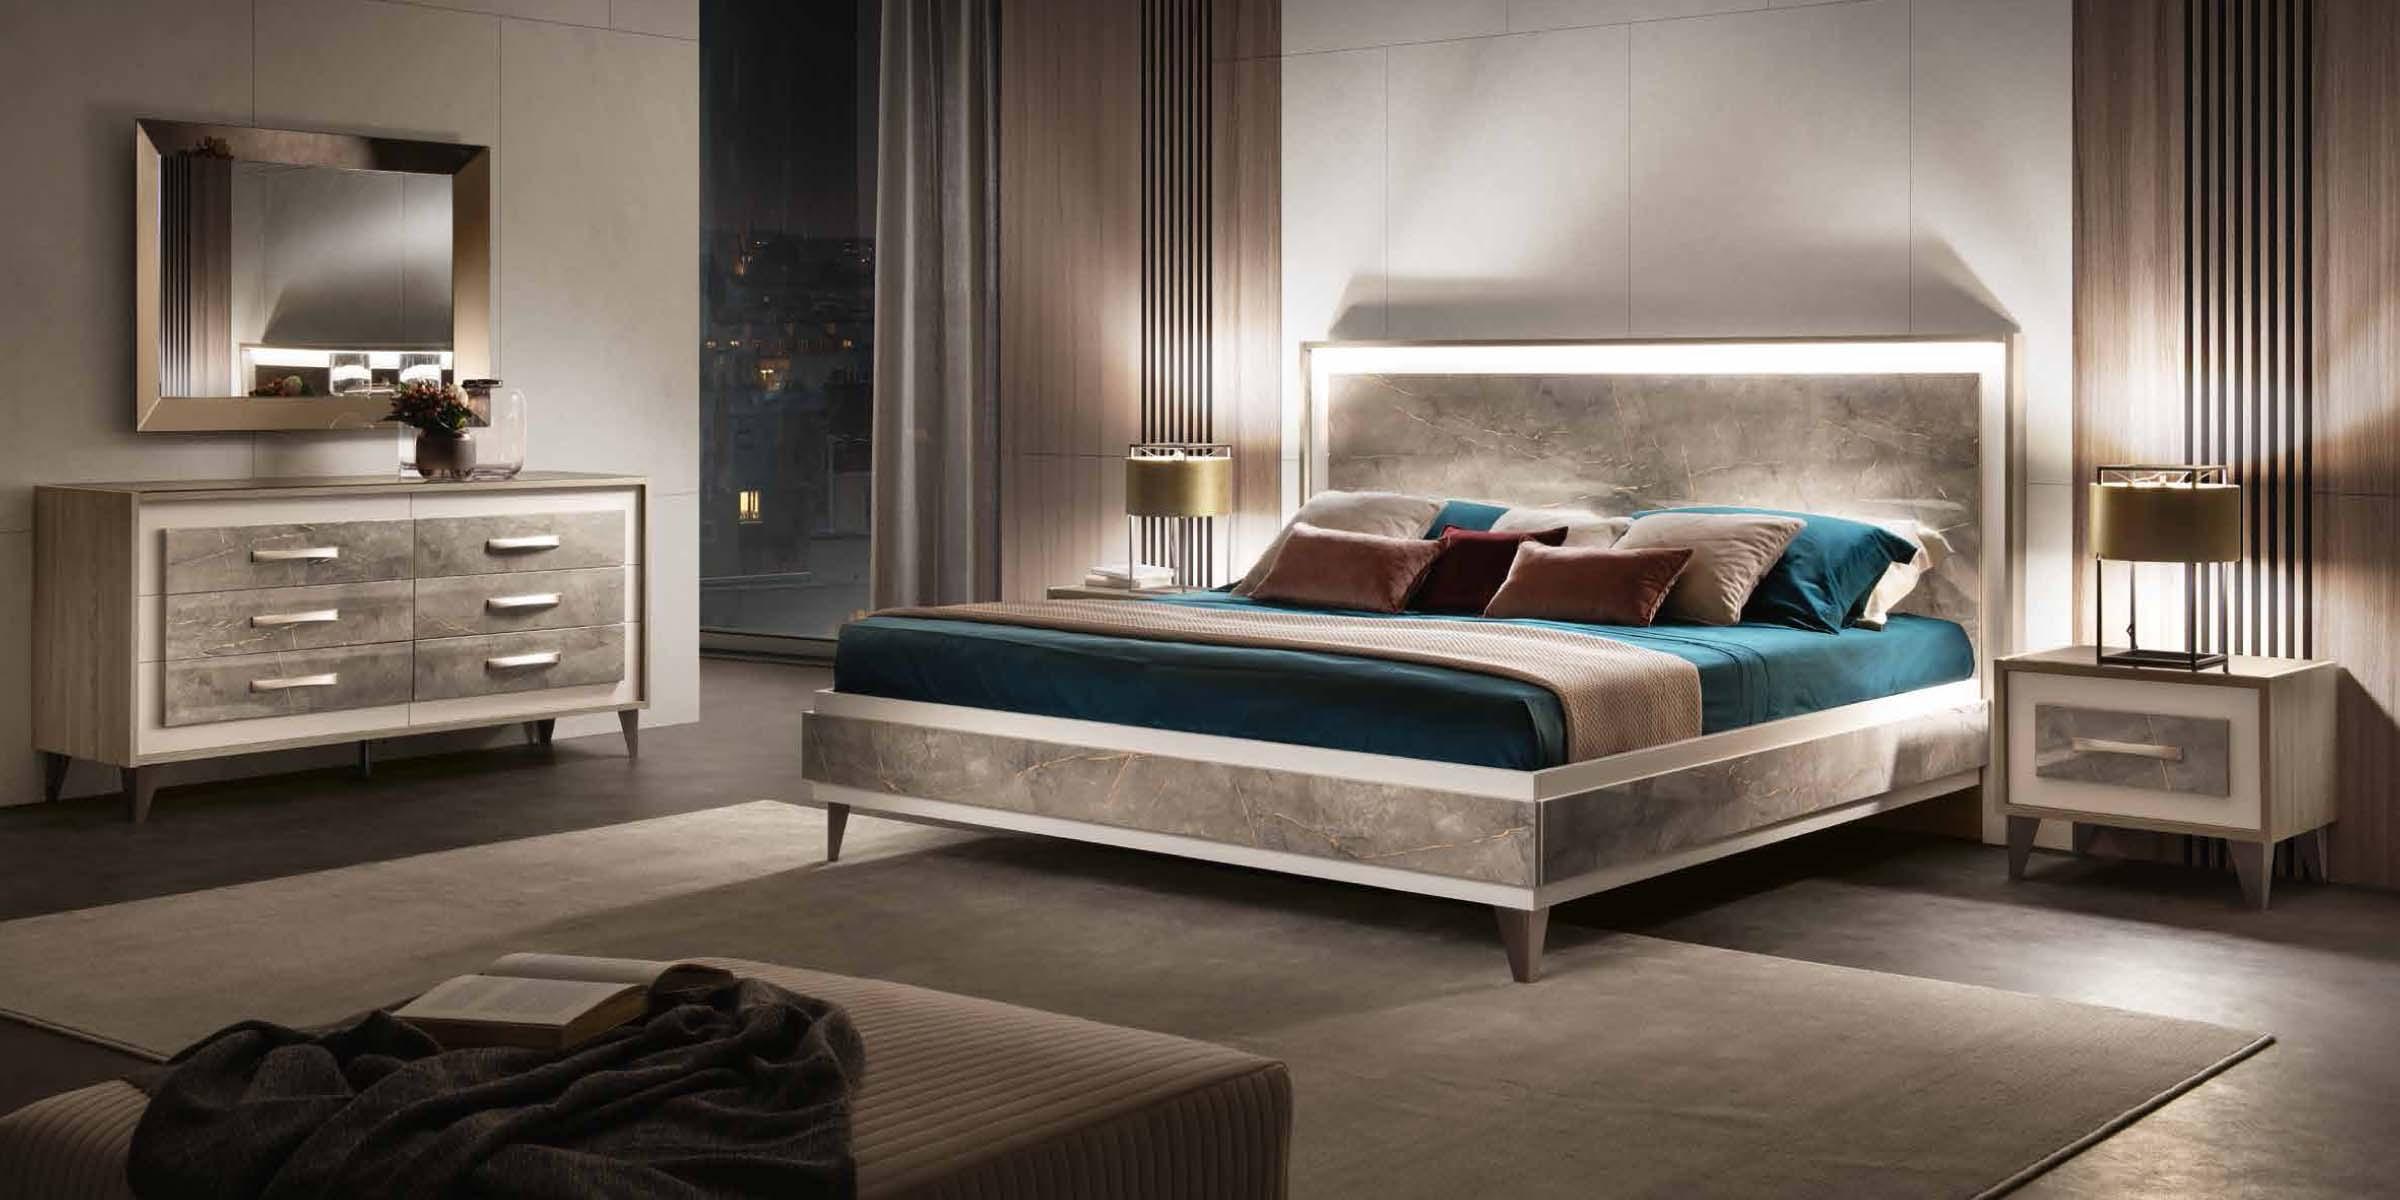 

    
Shiny Gray Marble-finish Top King Bedroom Set 5 ARREDOAMBRA ESF Made in Italy
